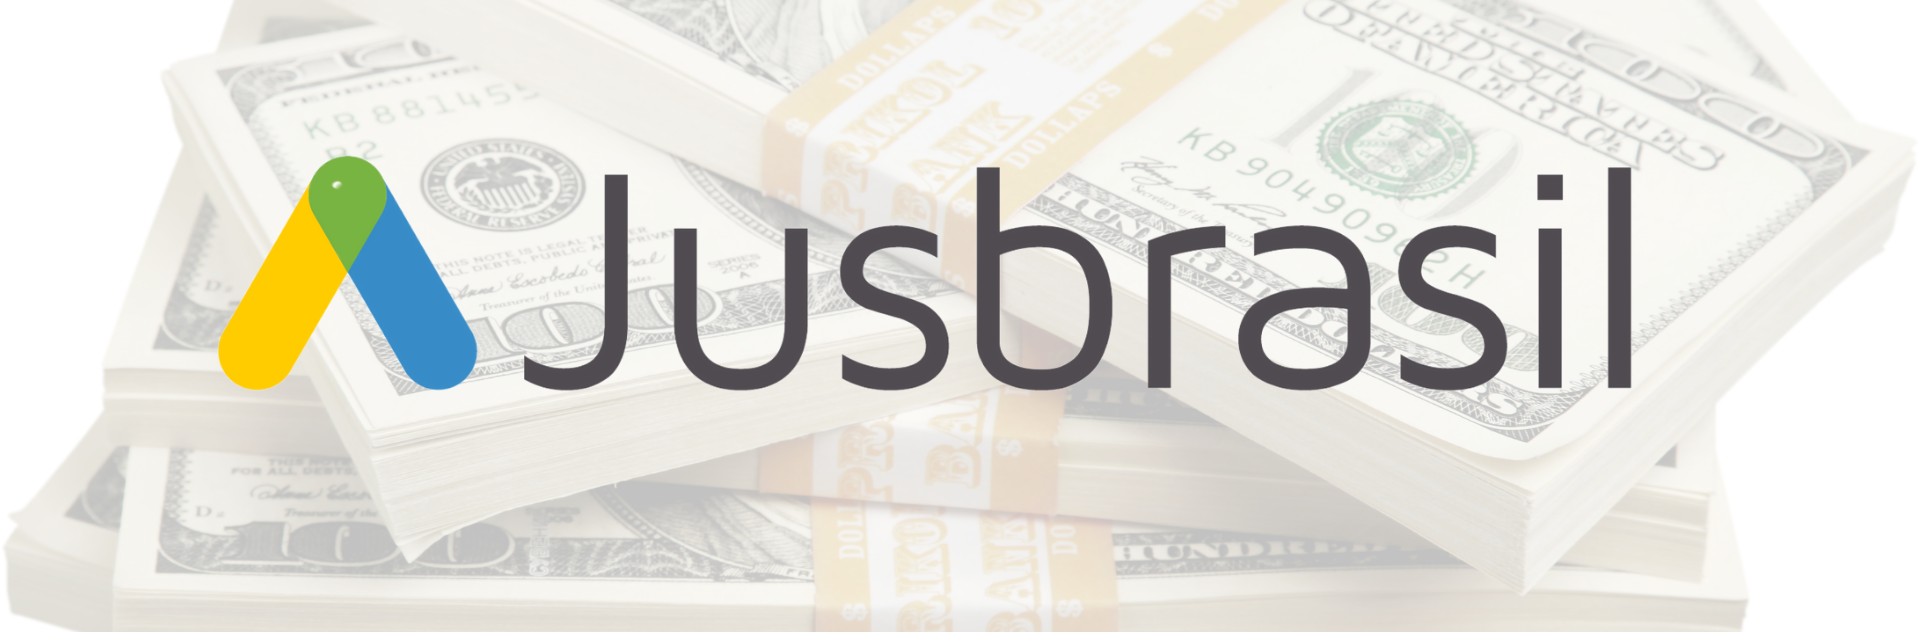 EXCLUSIVO: JusBrasil levanta US$ 32 mi com participação da SoftBank